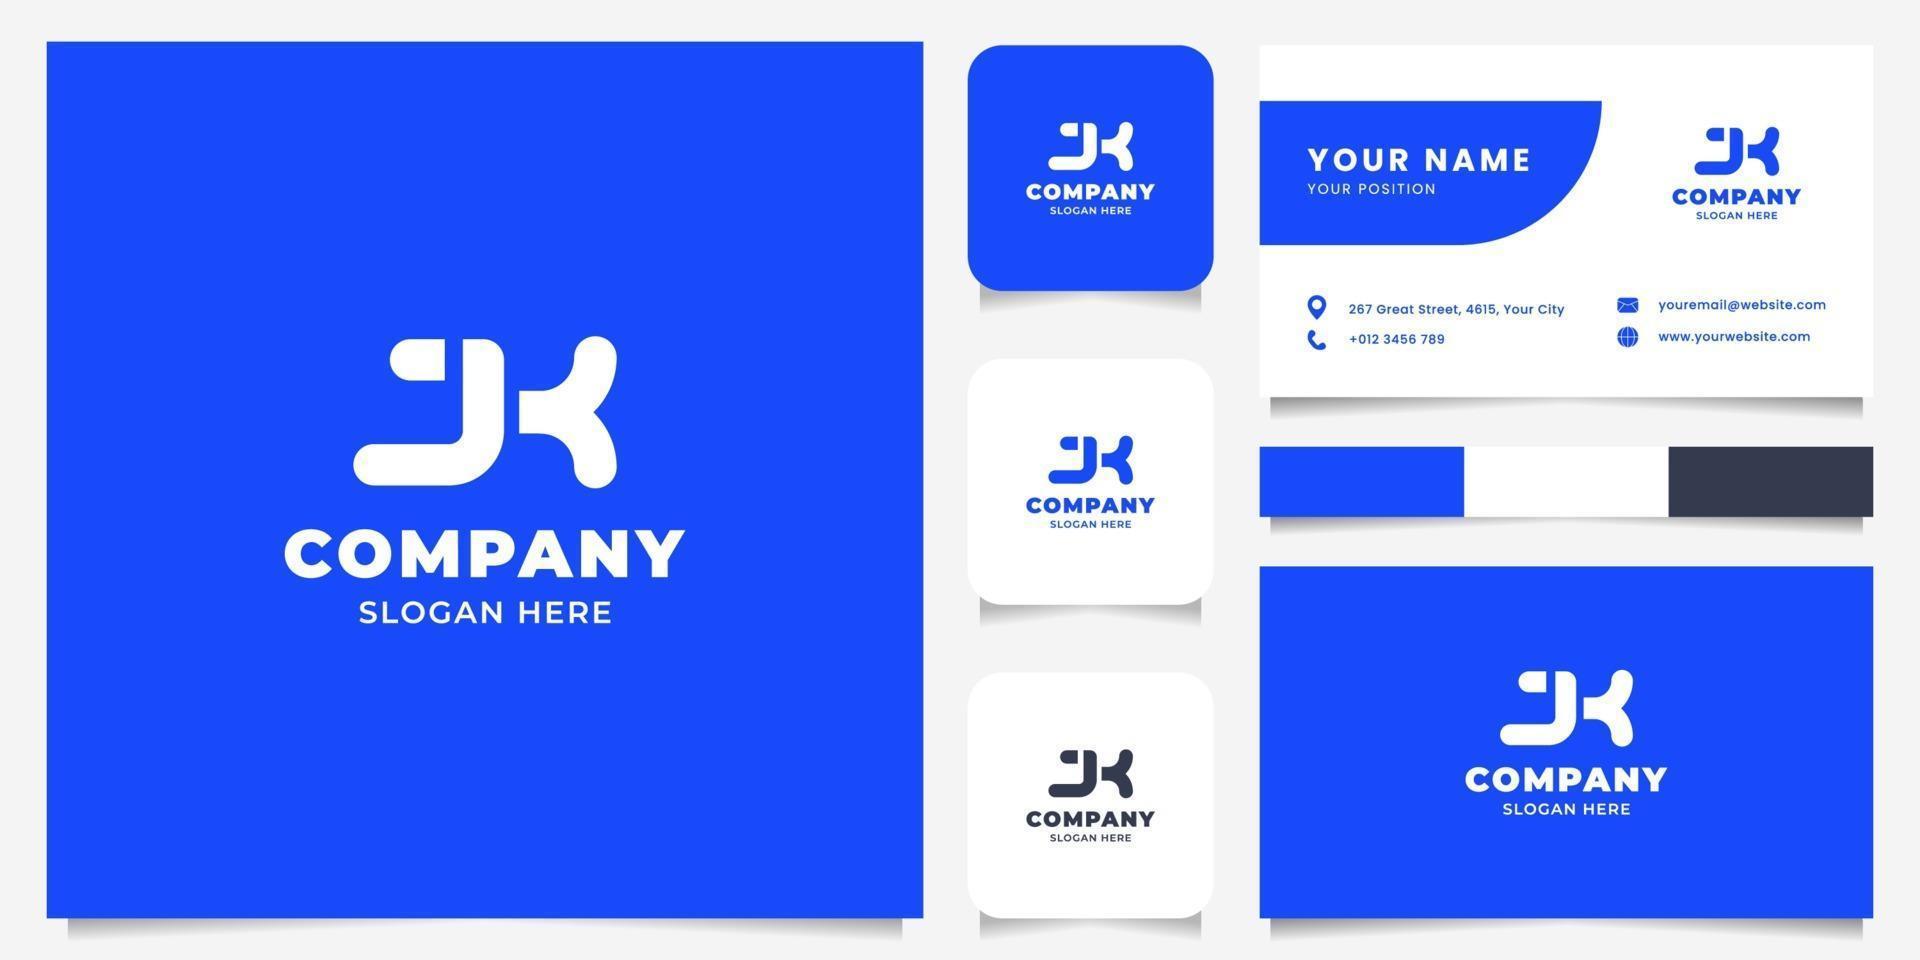 eenvoudig en minimalistisch vetgedrukt jk-logo met de sjabloon voor visitekaartjes vector